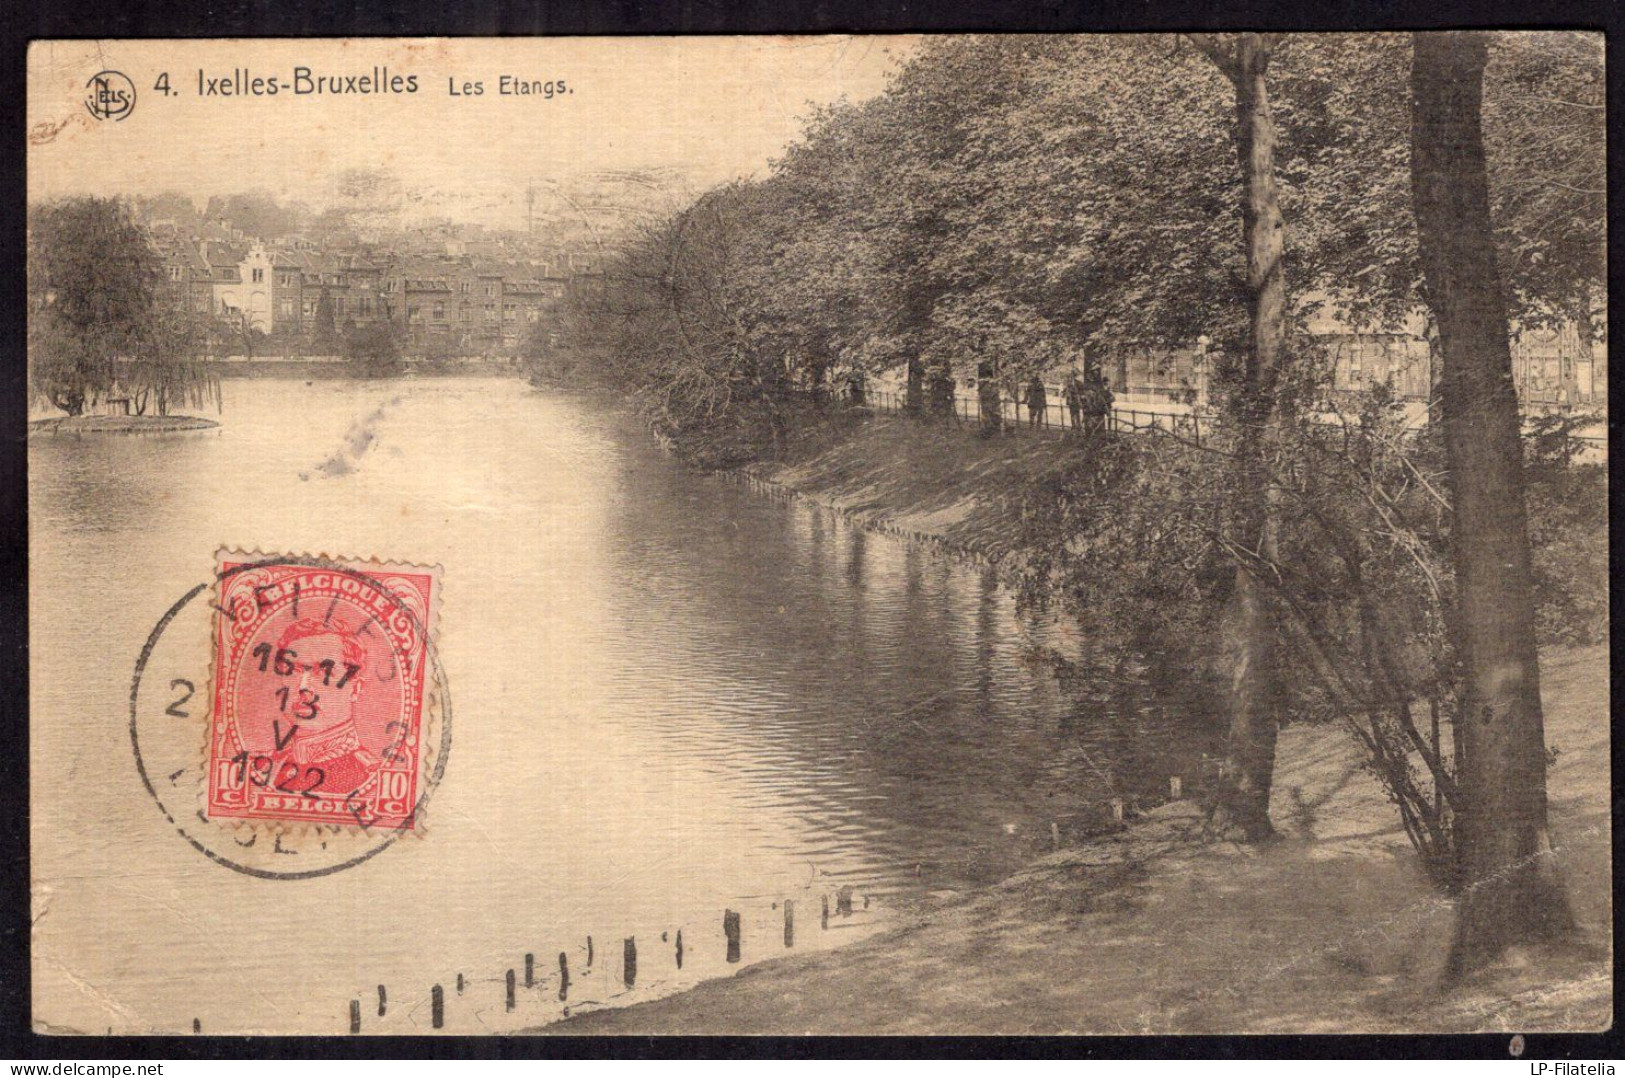 Belgique - 1922 - Ixelles - Les Etangs - Forêts, Parcs, Jardins